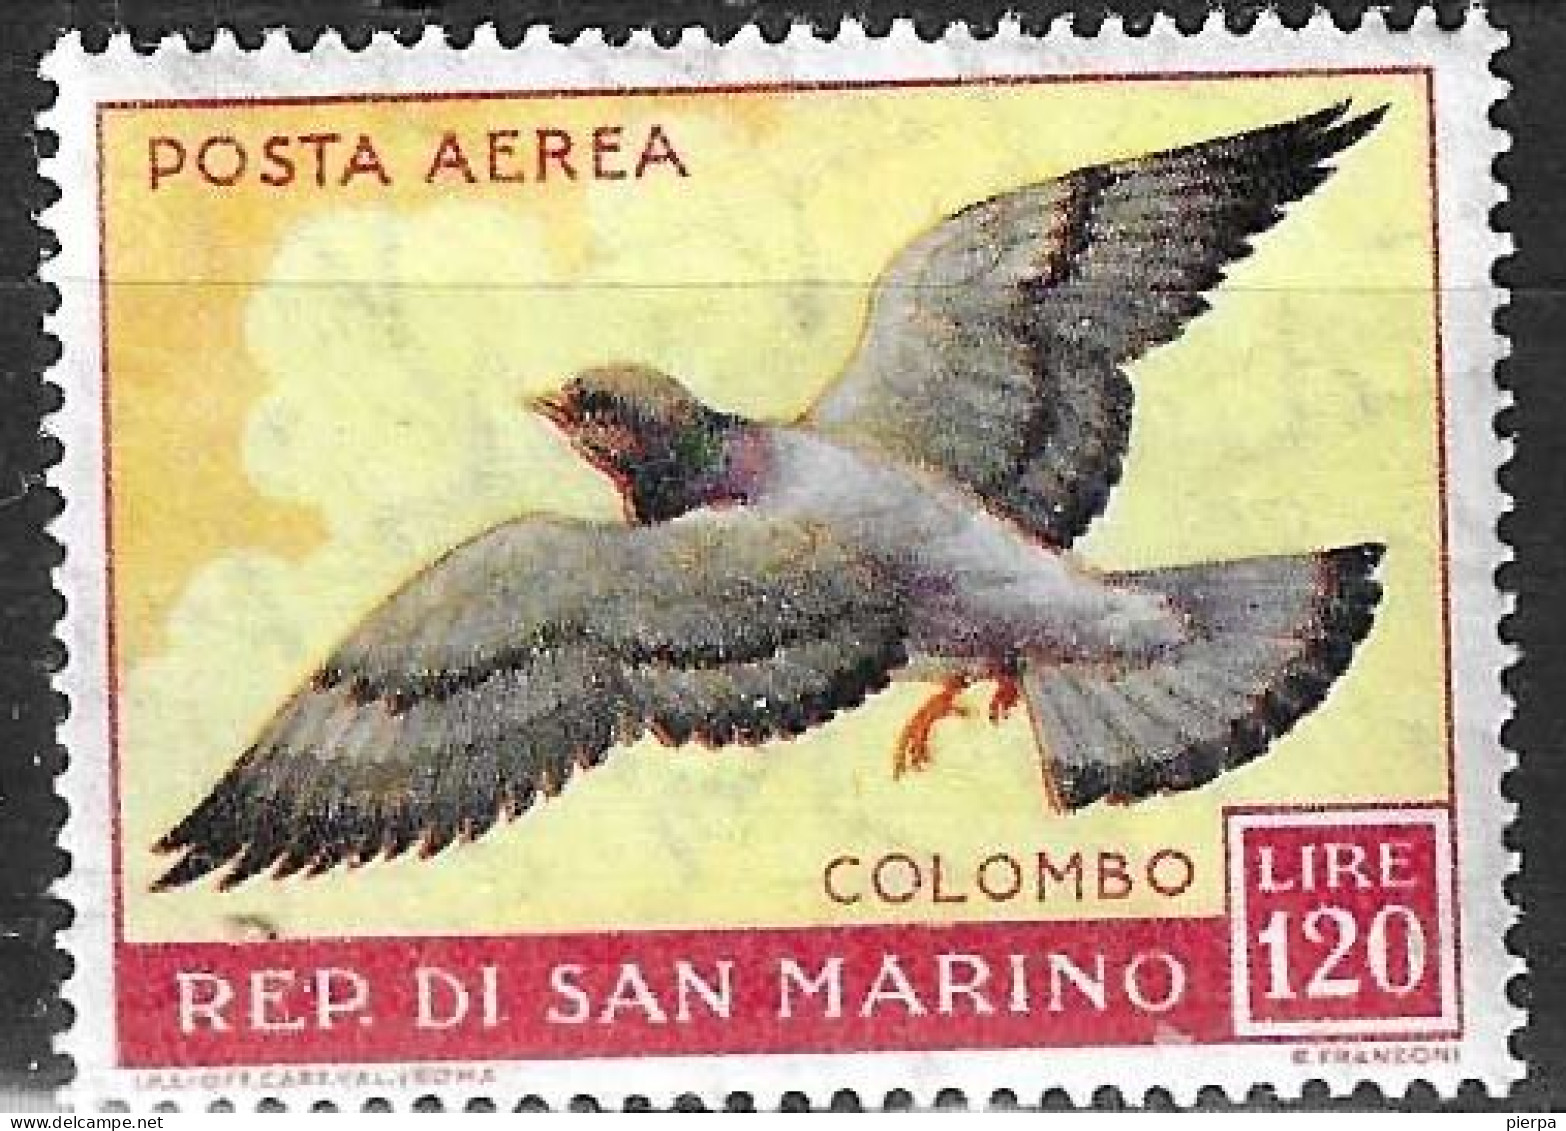 SAN MARINO -1959 - P. AEREA - COLOMBO - LIRE 120- NUOVO -MNH** ( YVERT AV 114- MICHEL 609- SS A 125) - Luftpost